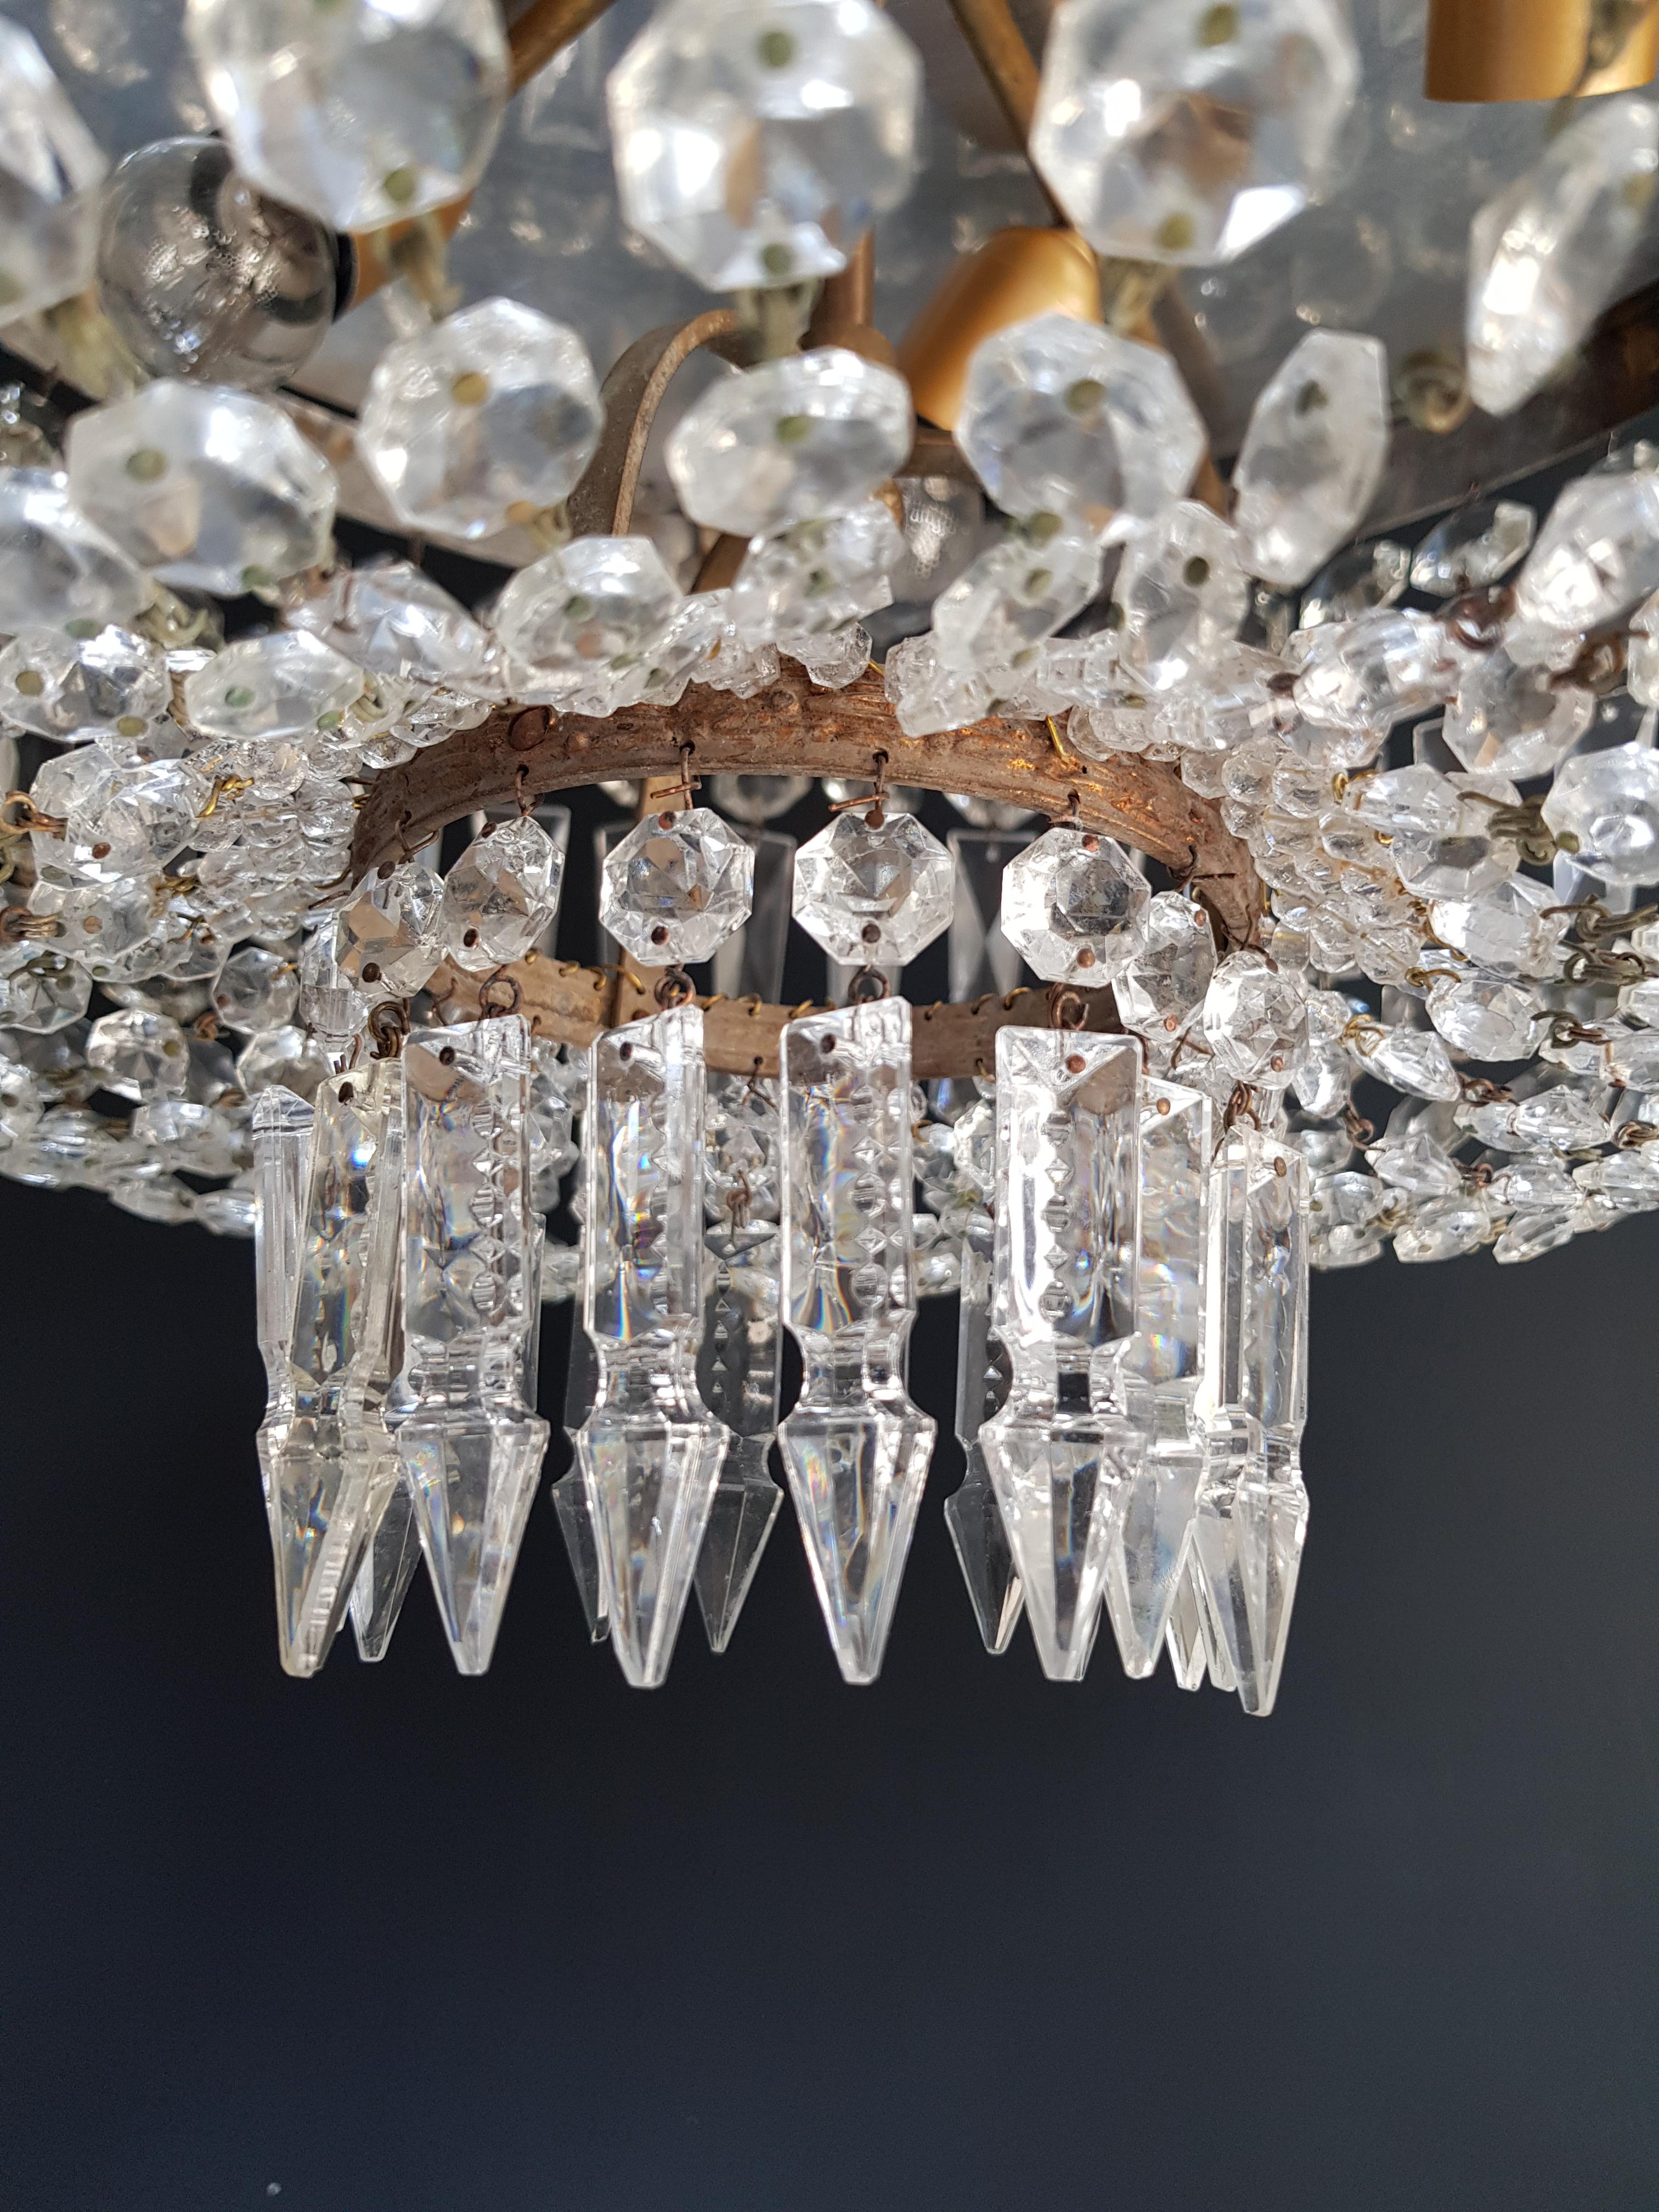 European Low Plafonnier Crystal Chandelier Brass Lustre Ceiling Antique Art Nouveau